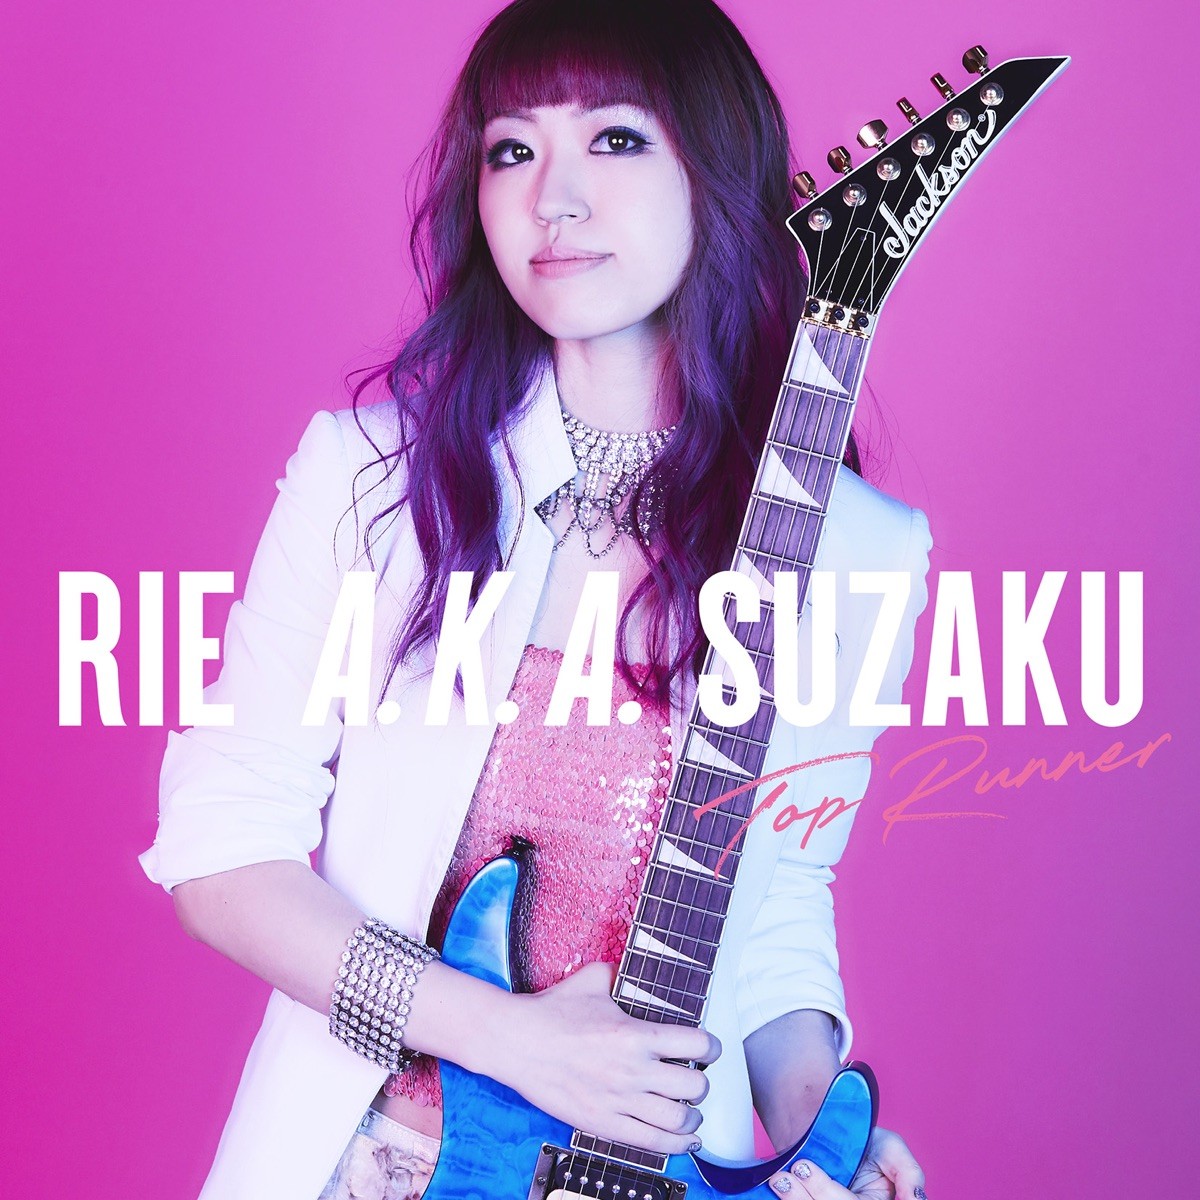 Rie a.k.a. Suzaku – Top Runner [AAC 256 / WEB] [2019.06.26]